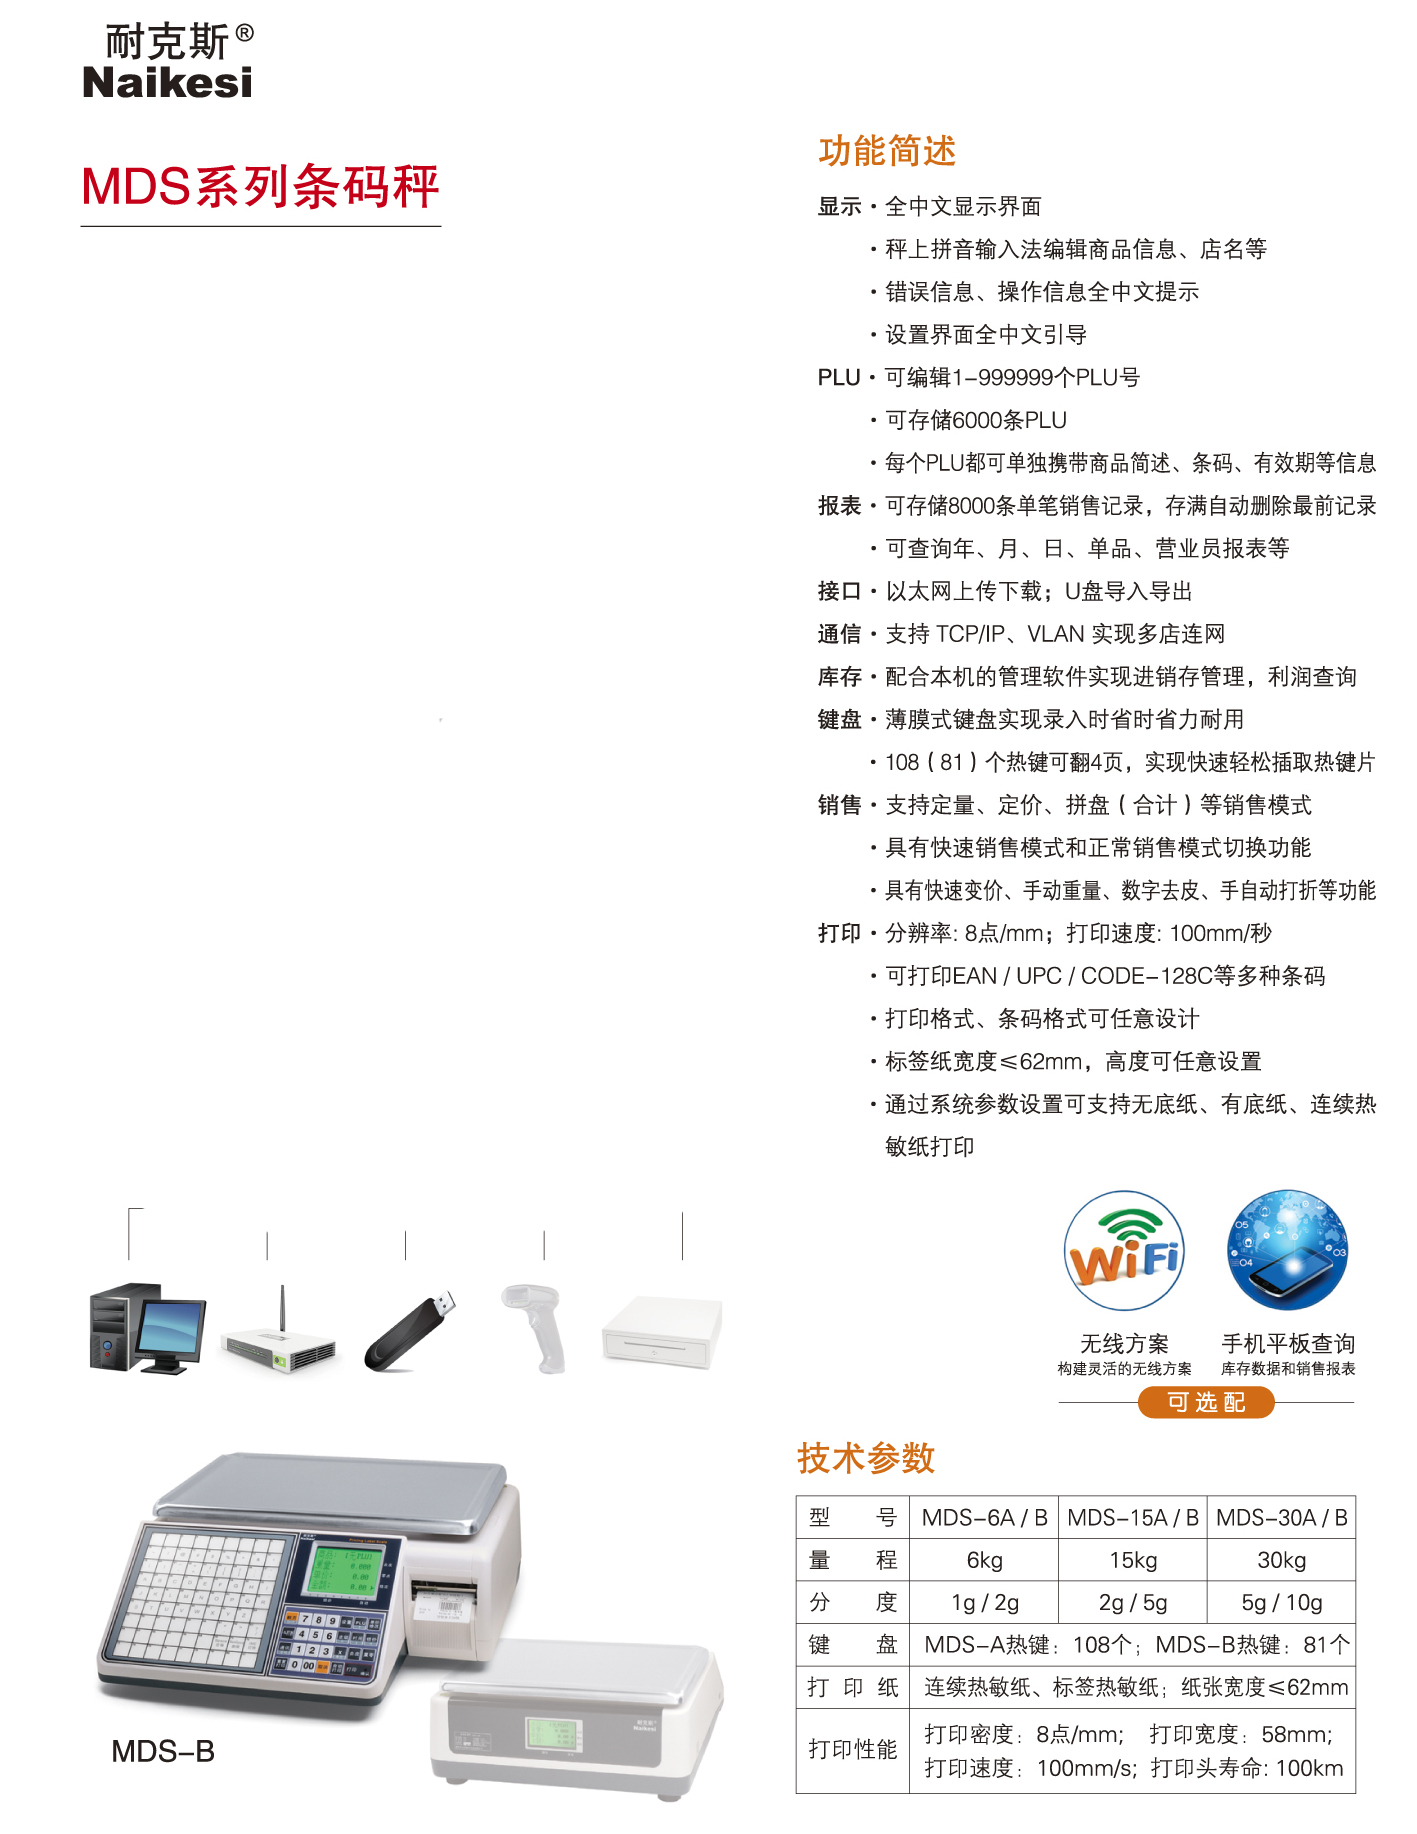 中文MDS-Bjpg.jpg